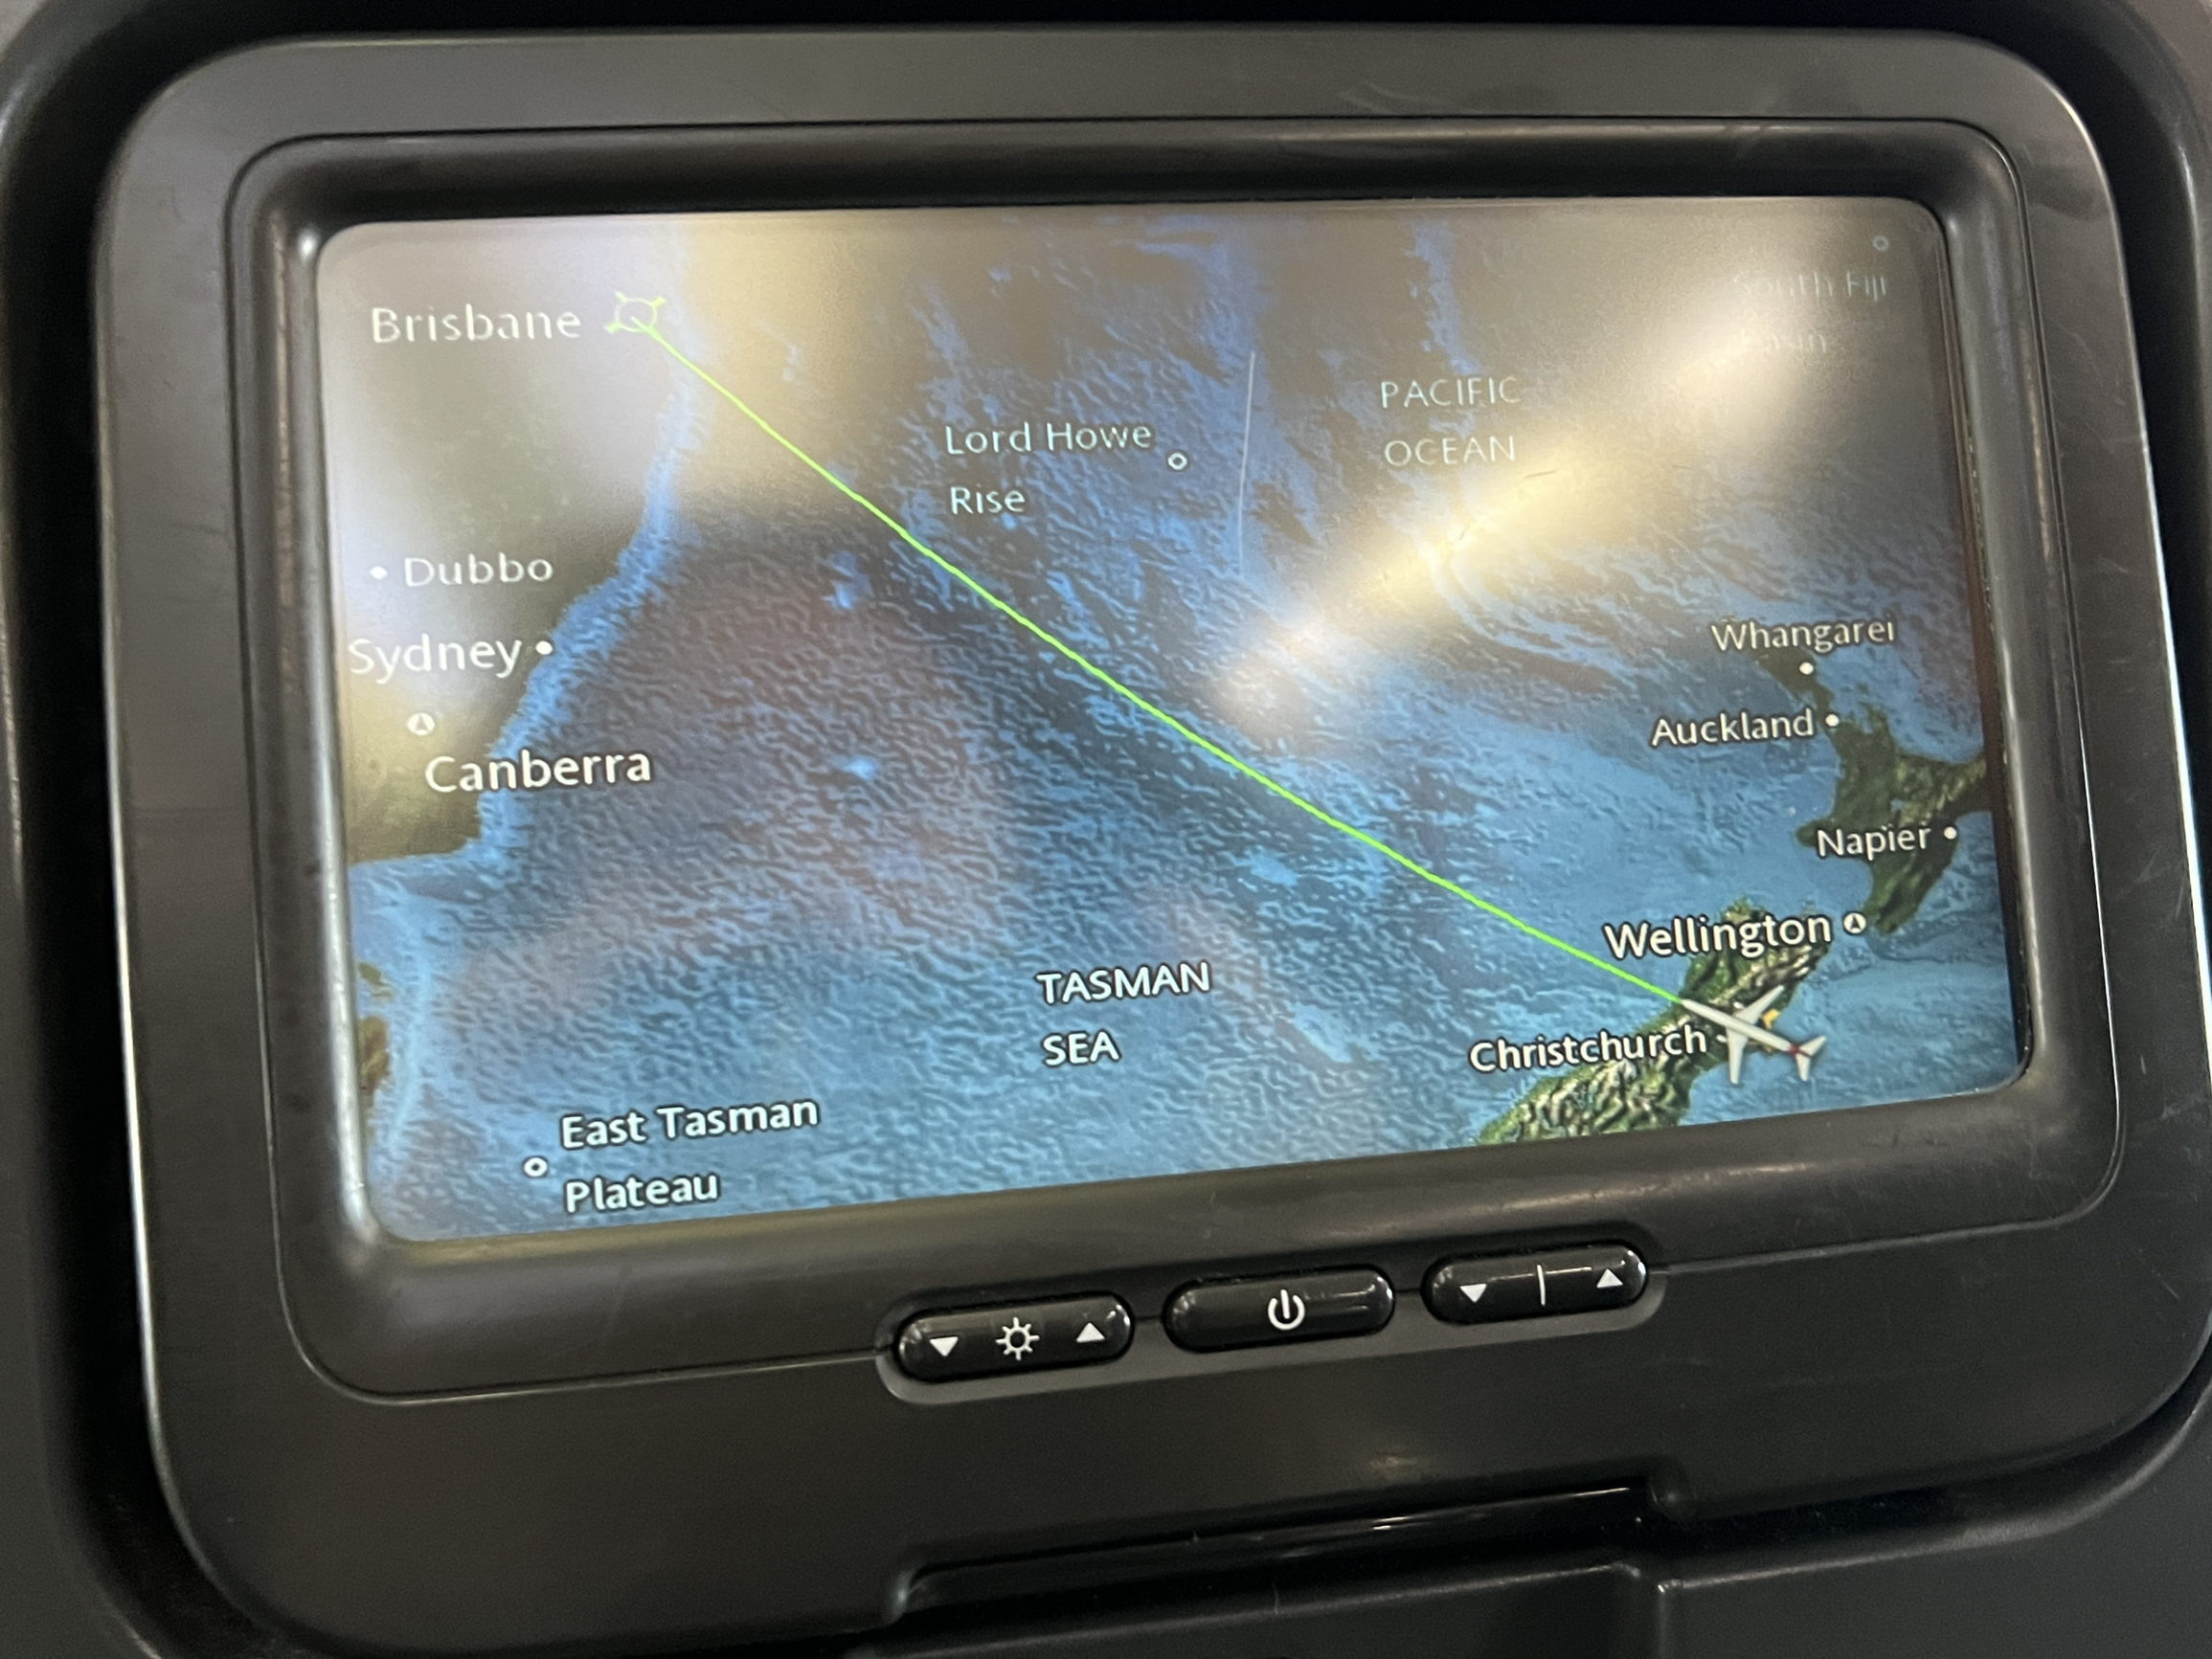 第十一天新西兰闪现澳大利亚转机 技巧 澳大利亚布里斯班通关技巧： 1.飞机上先拿好入境卡，为了下来节